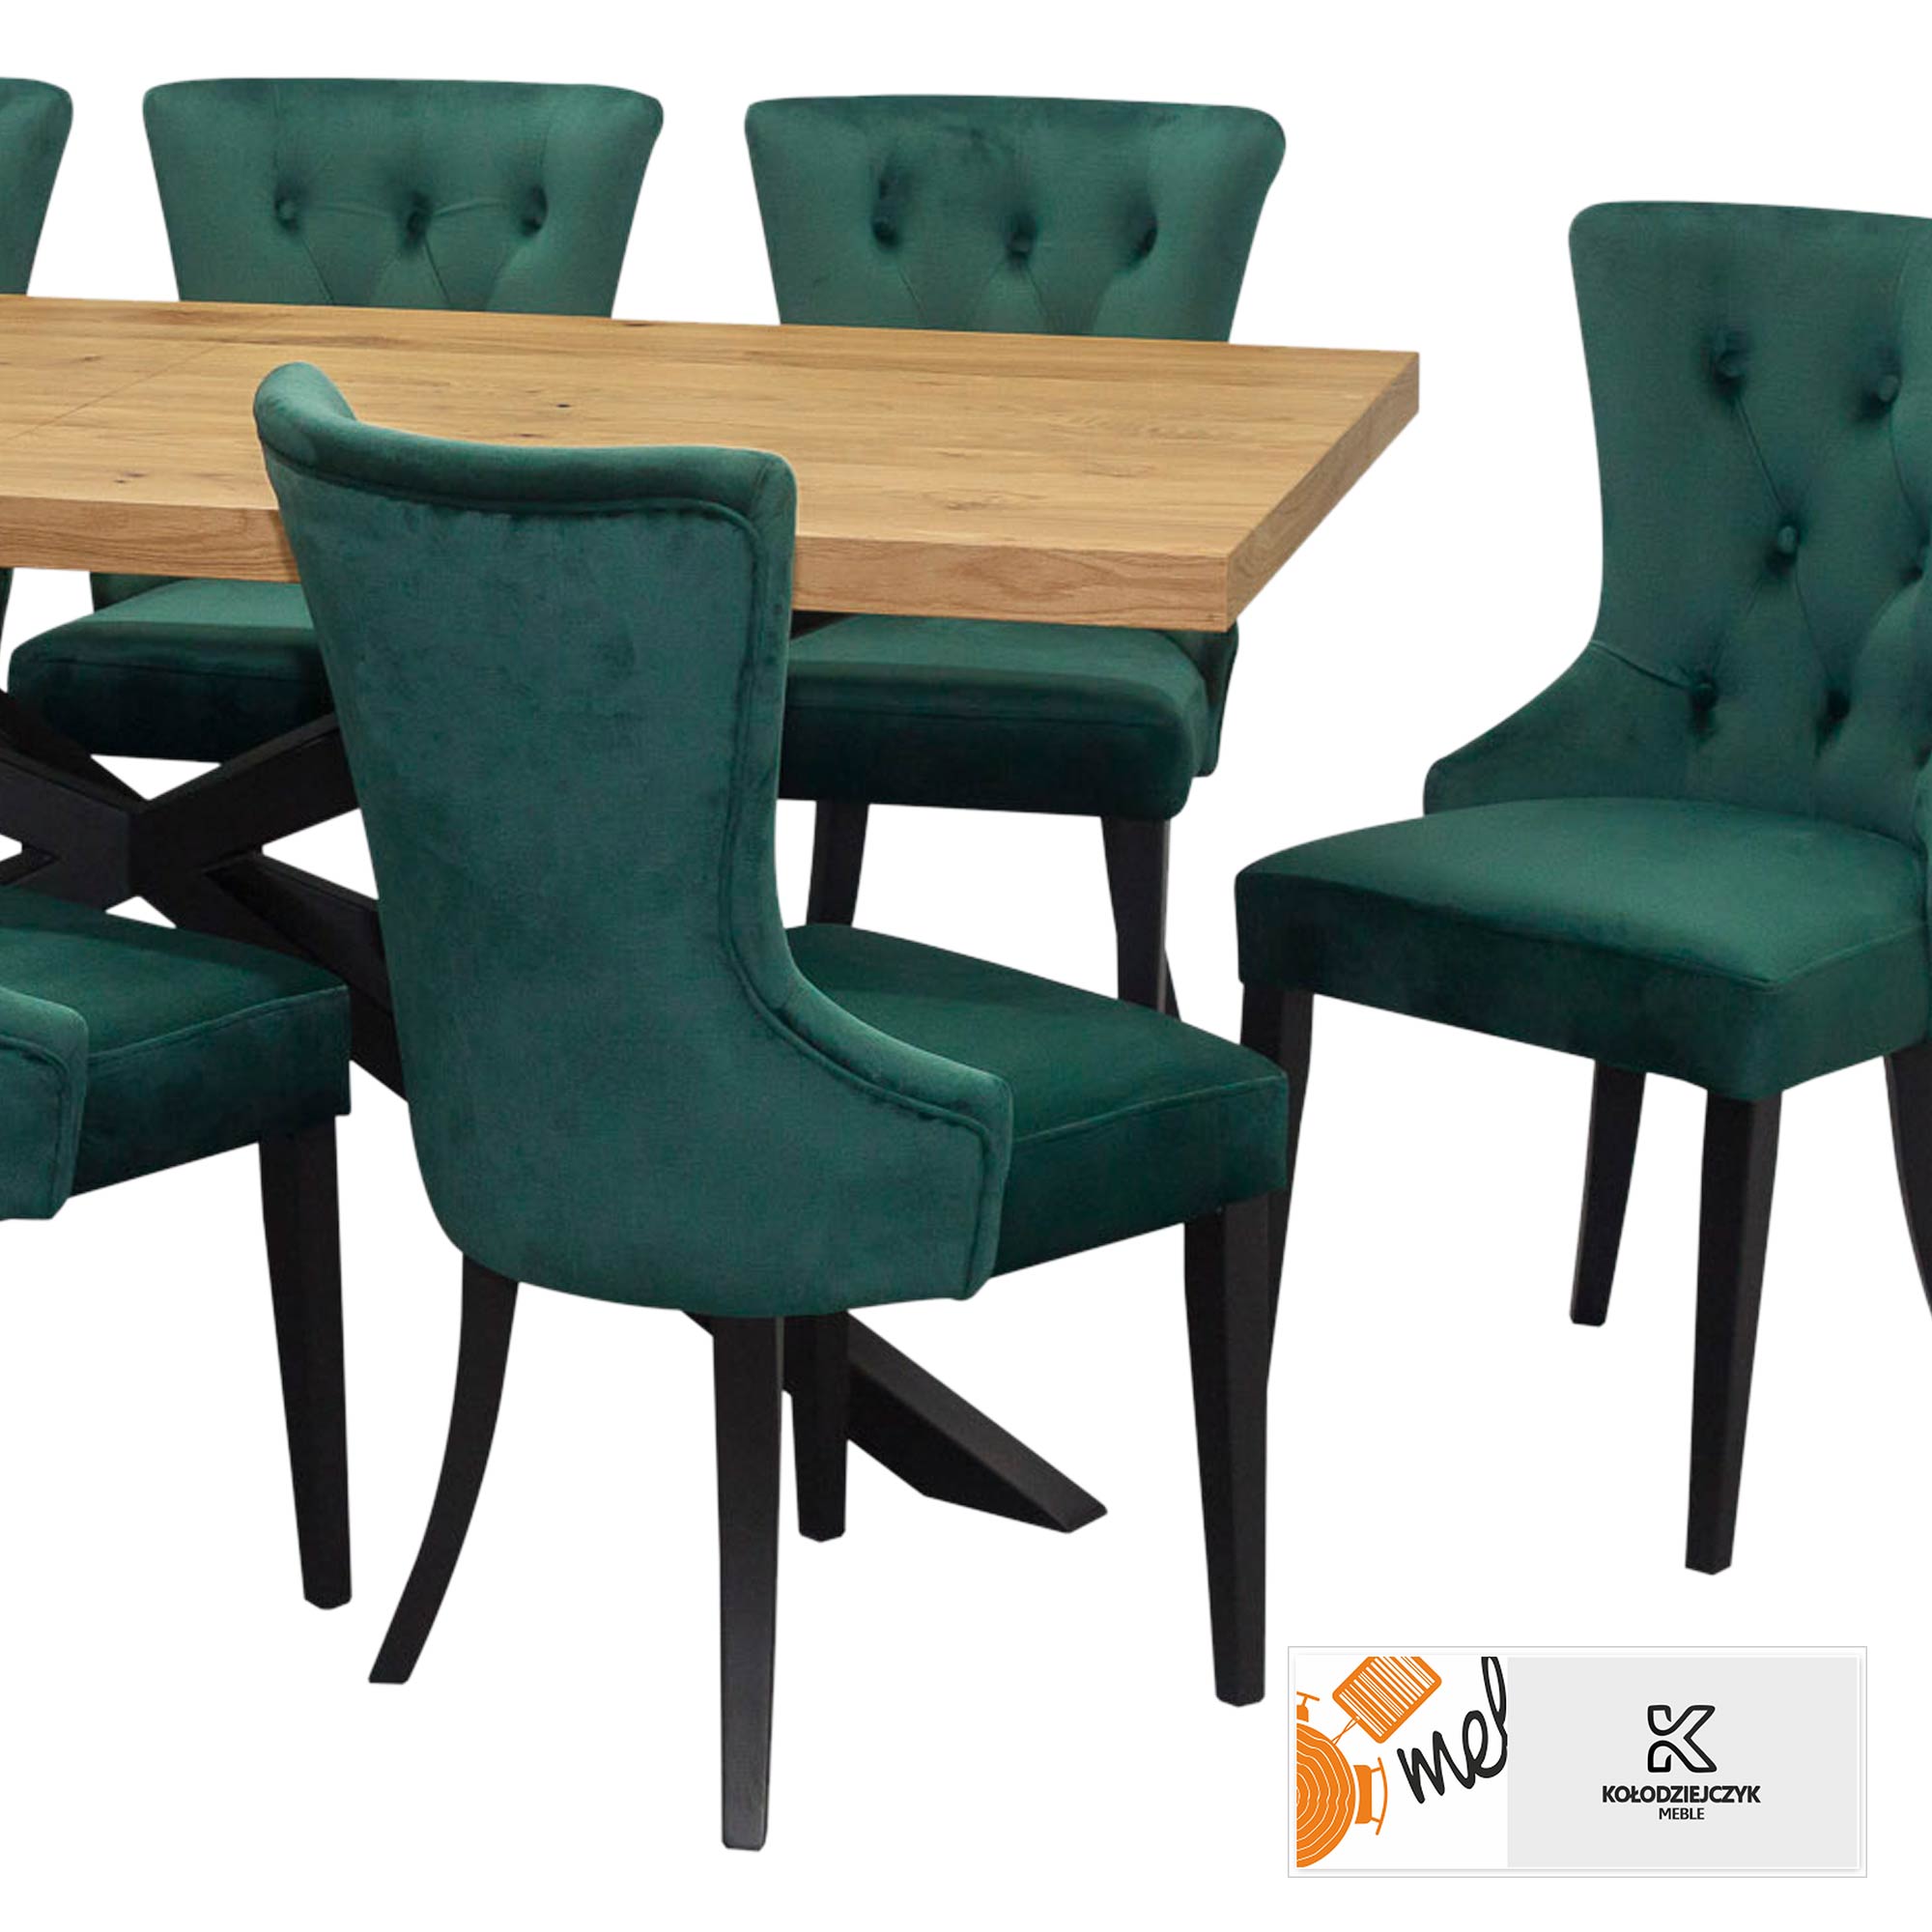 Zestaw Z21 - industrialny stół z krzesłami